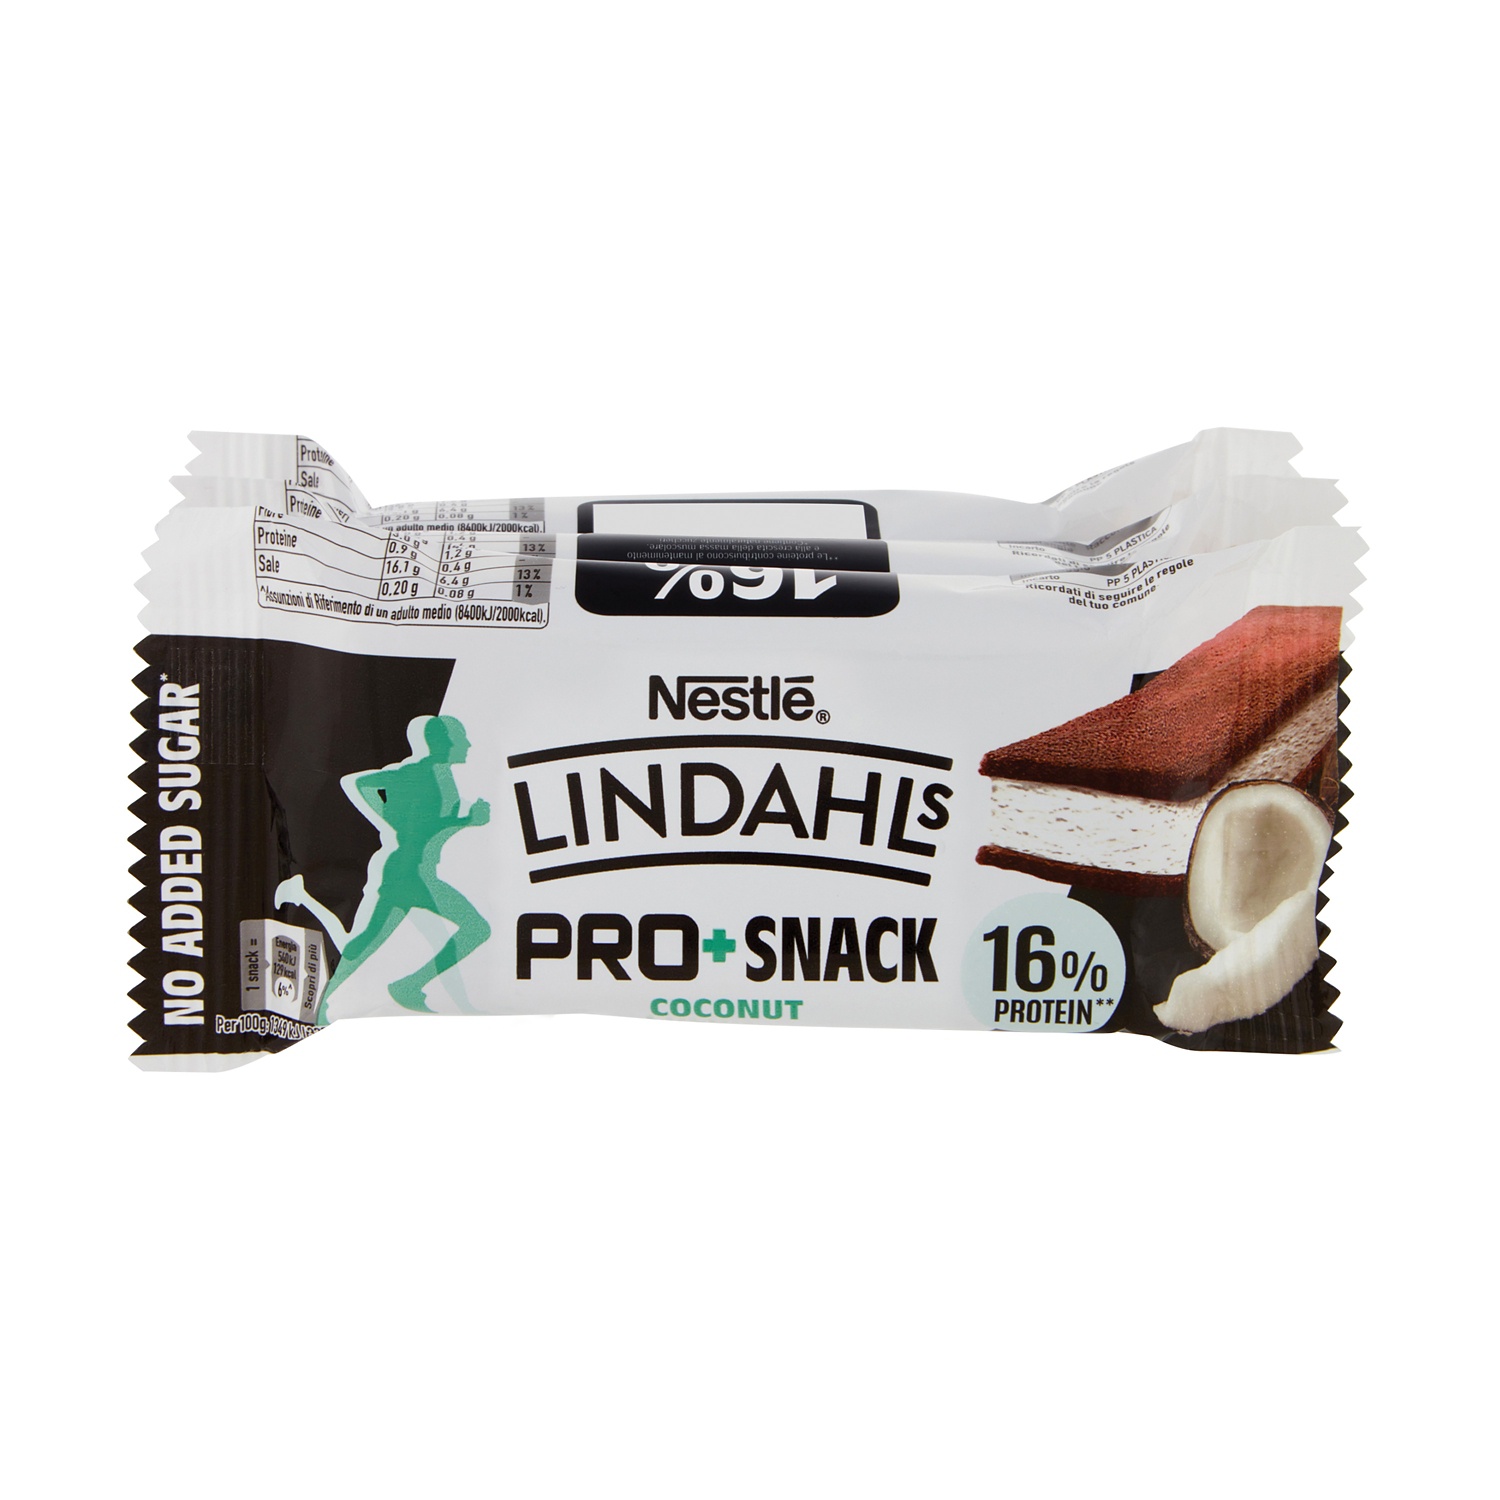 NESTLÈ Lindahls PRO + Snack